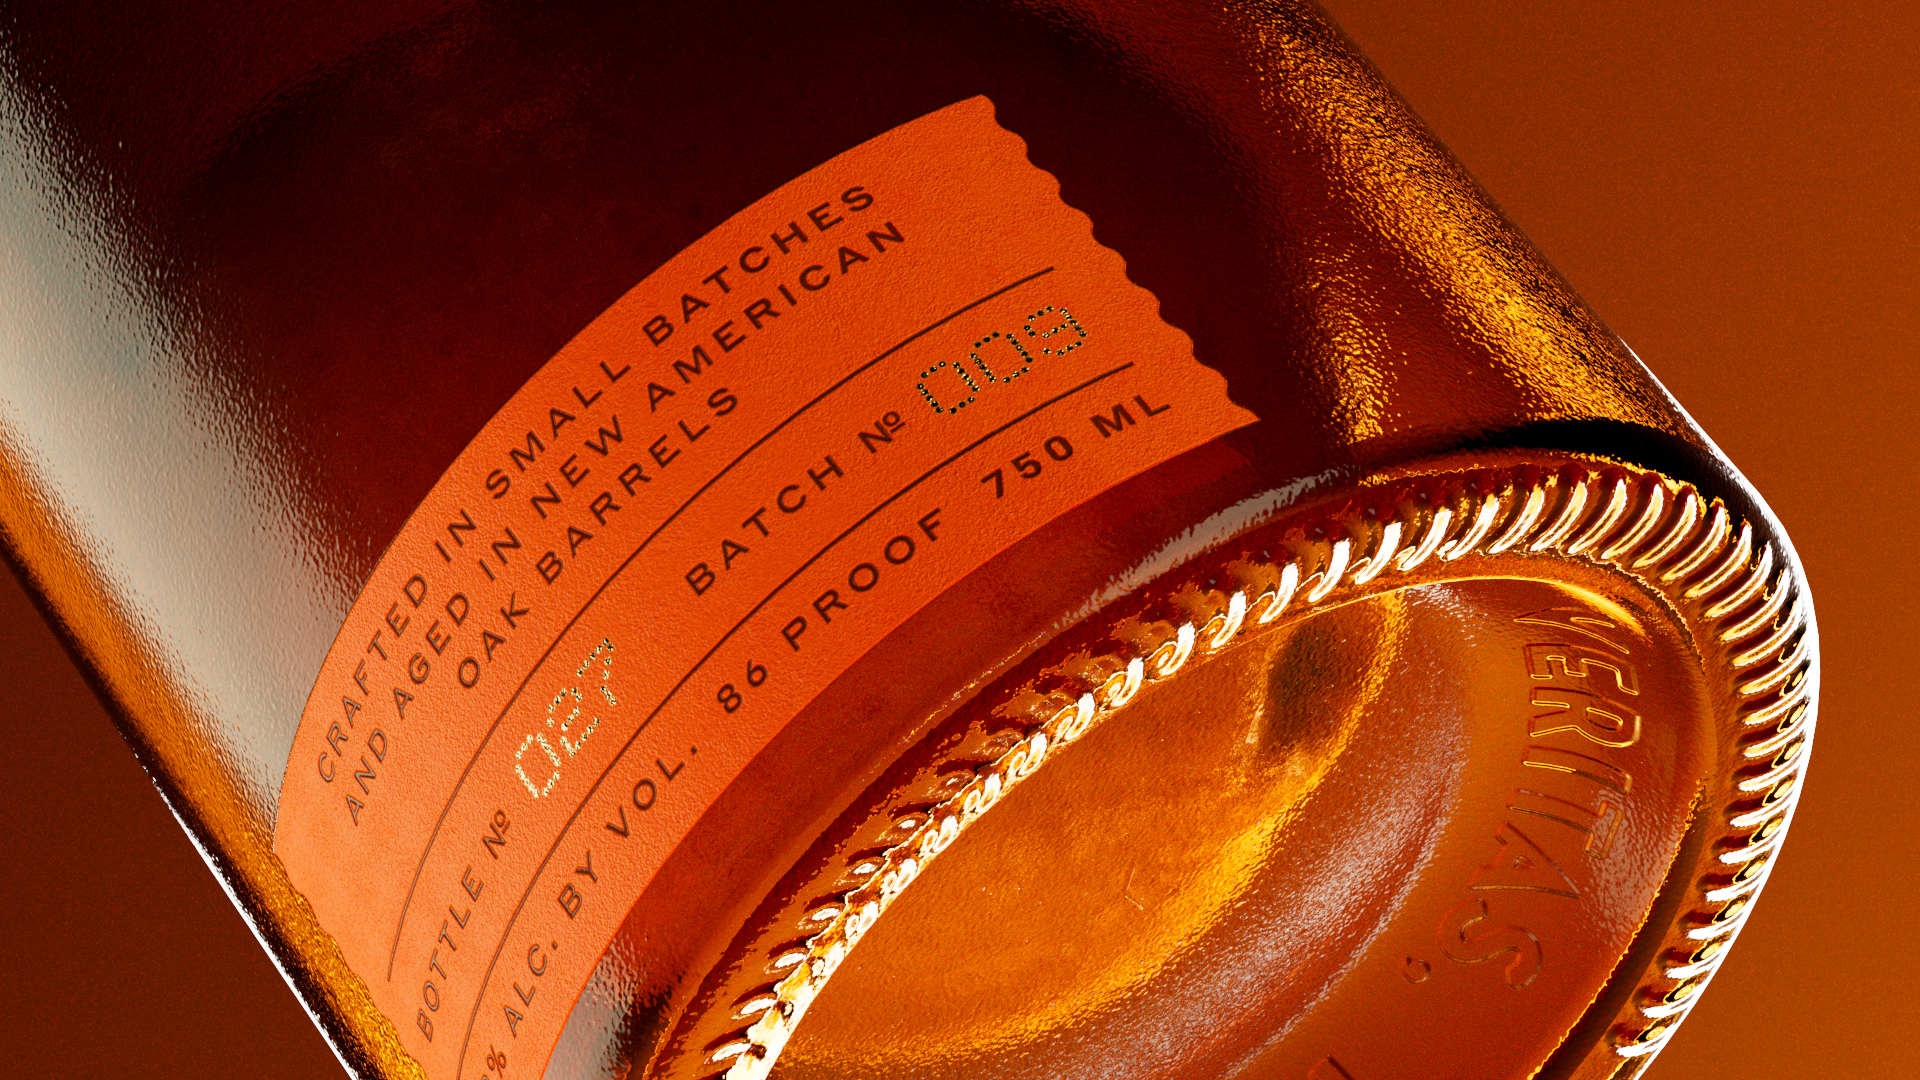 威士忌包装设计